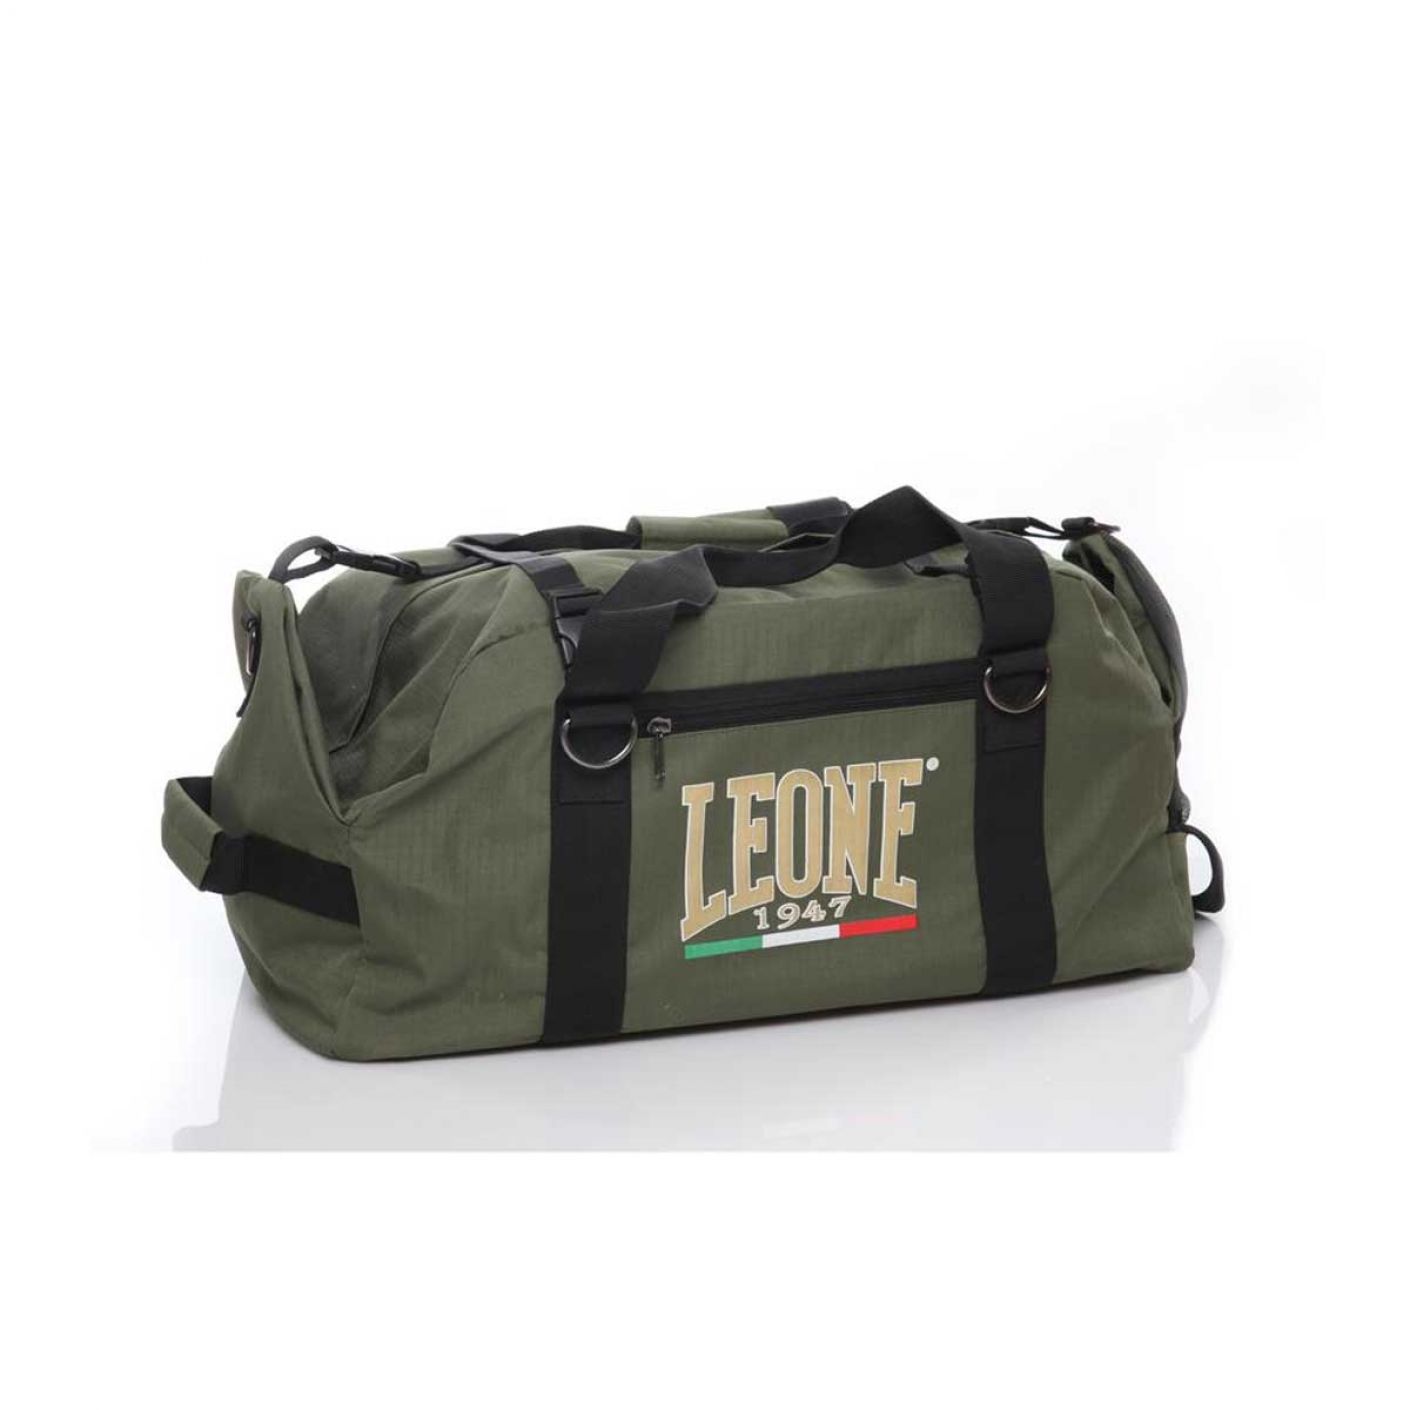 Leone Duffel Bag AC908 1947 A Backpack Green